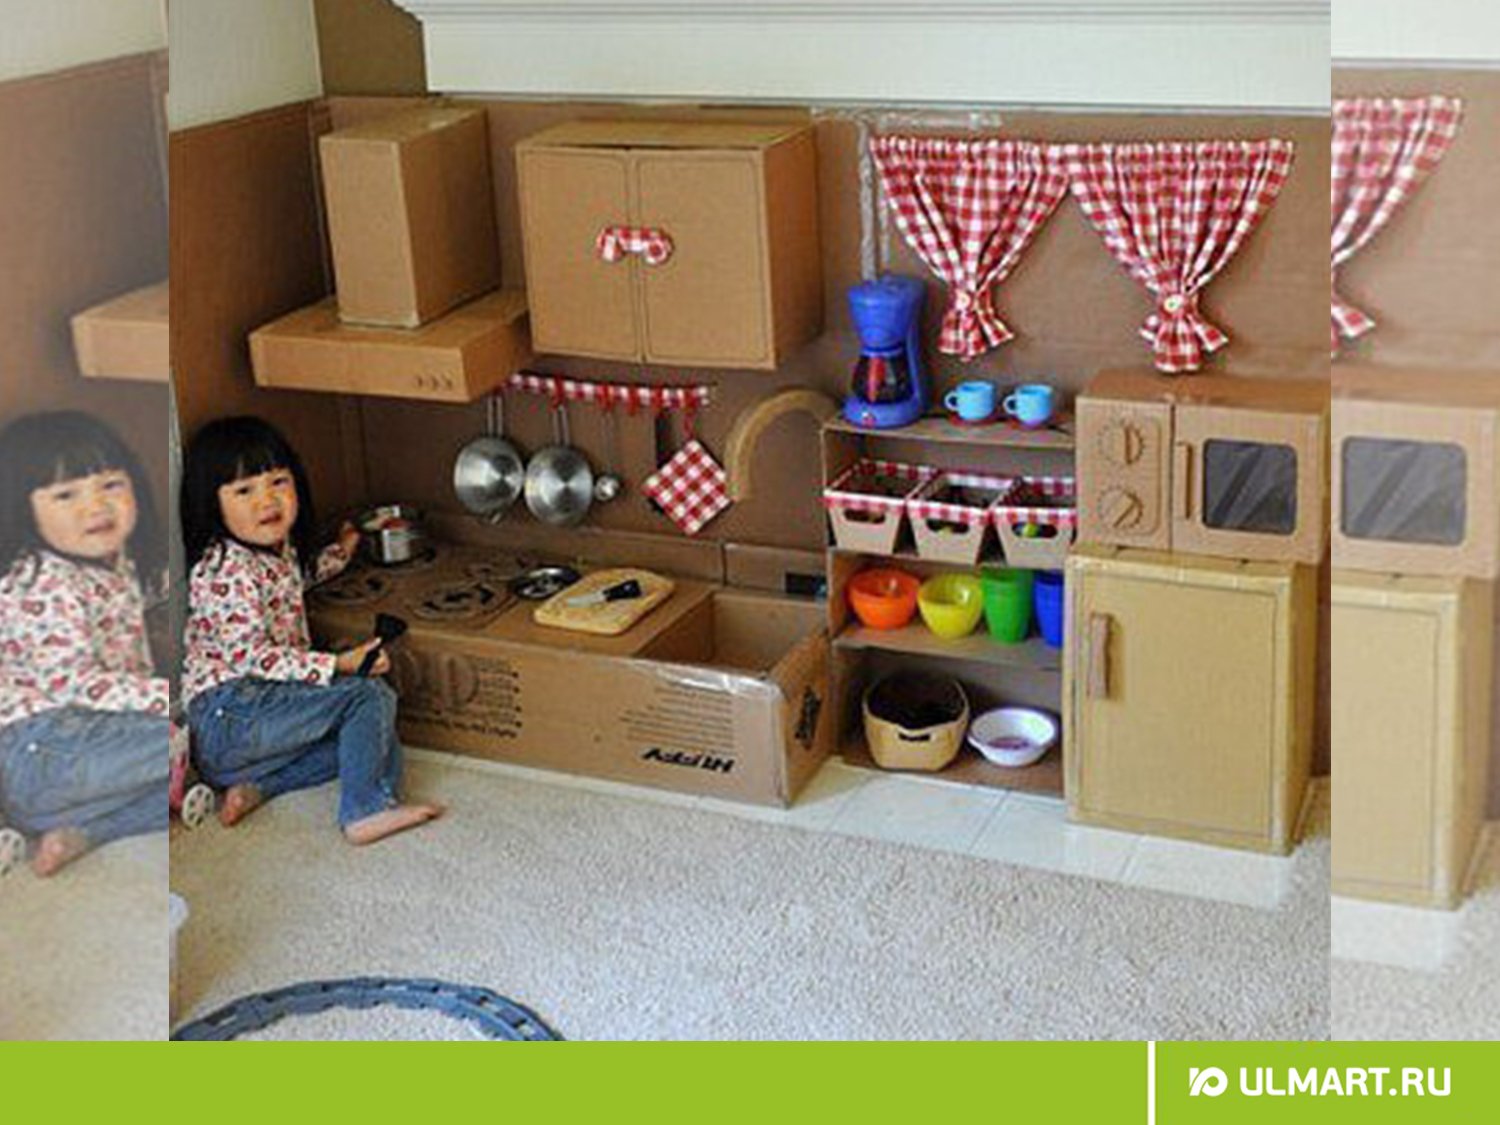 Детская кухня из картонных коробок - идеи подарков